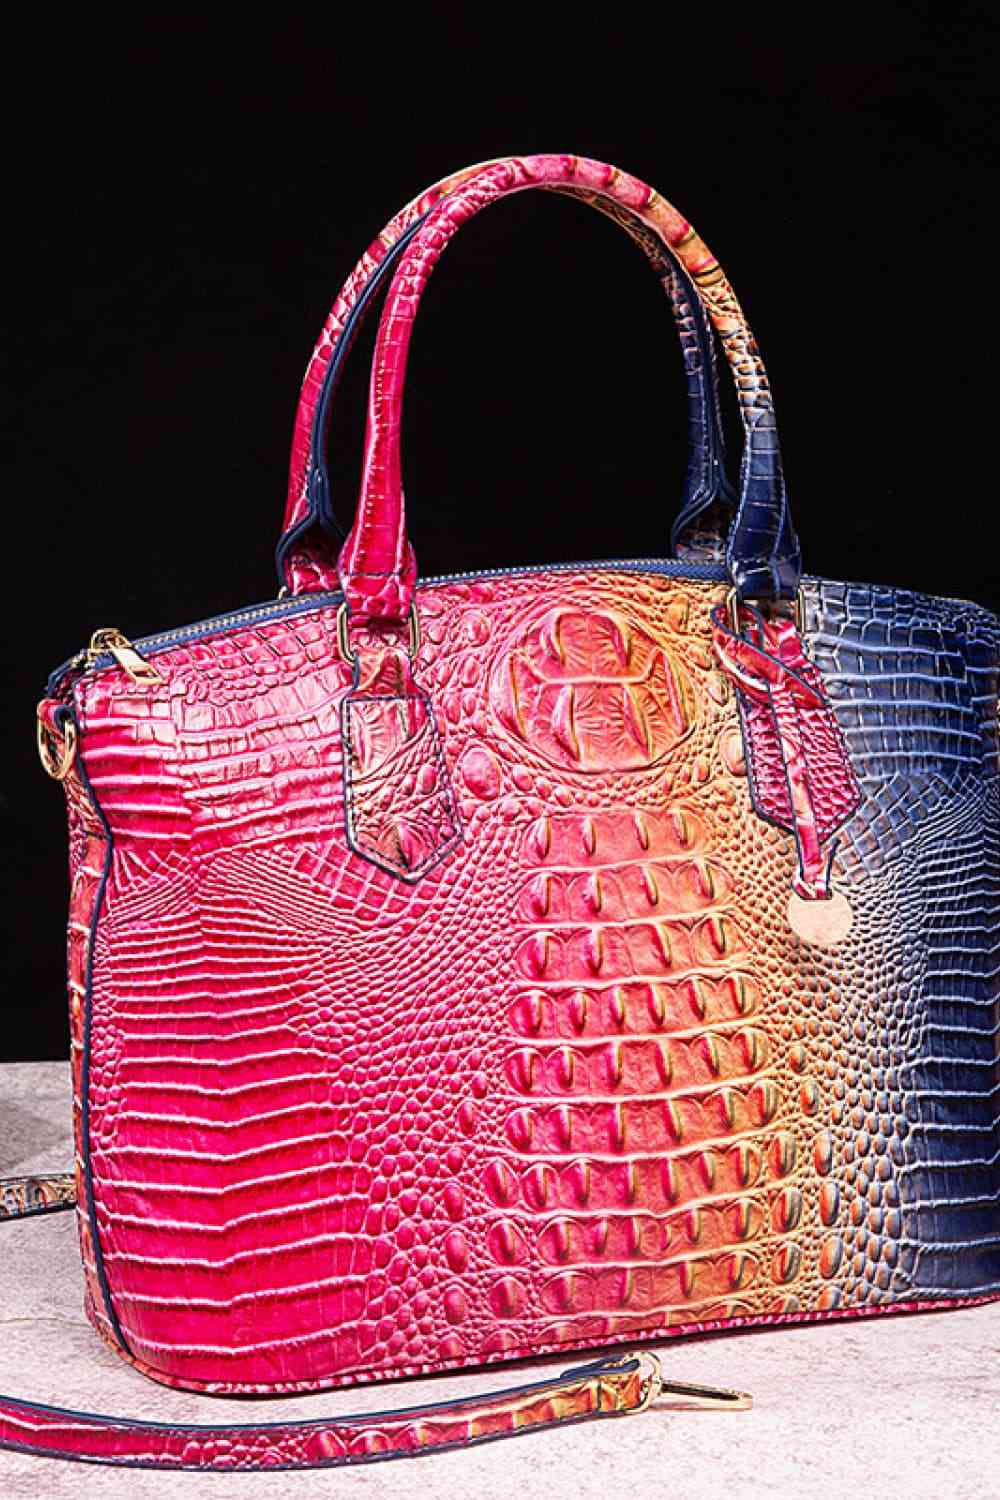 TEEK - Gradient Style Scheduler Handbag BAG TEEK Trend Pink/Blue  